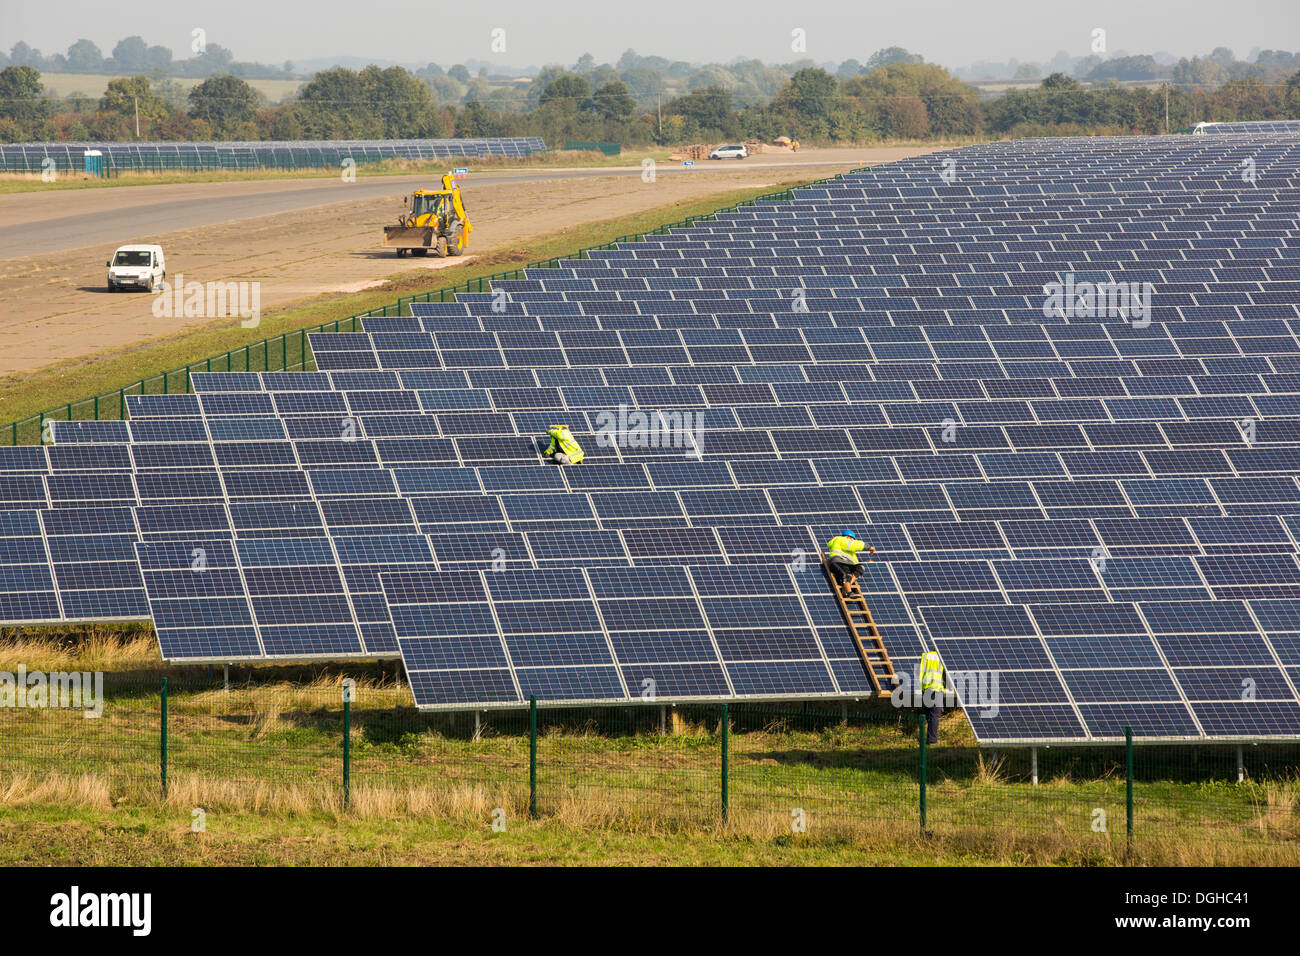 Wymeswold ferme solaire la plus grande centrale solaire au Royaume-Uni à 34 MWp, basé sur un ancien terrain d'aviation de la seconde guerre mondiale désaffecté, Leicestershire, UK. Il contient 130 000 panneaux et couvre 150 hectares. Banque D'Images